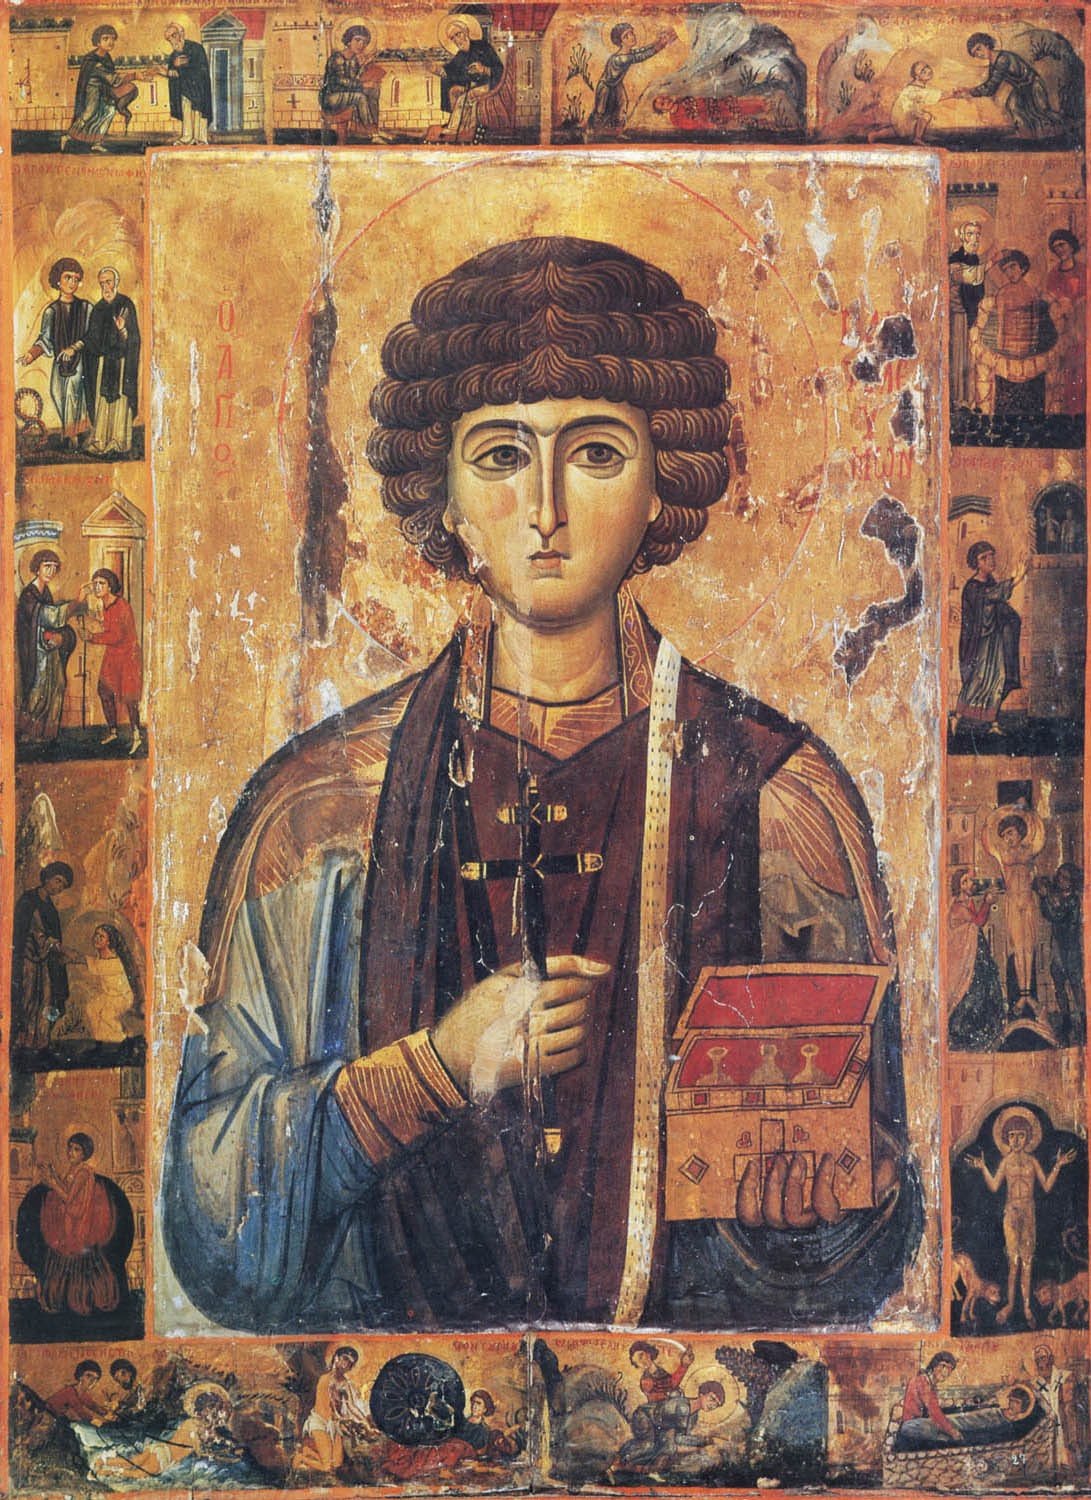  Великомученик  Пантелеимон с житием. Икона, XIII век. Византия. Монастырь св. Екатерины на Синае (Египет)